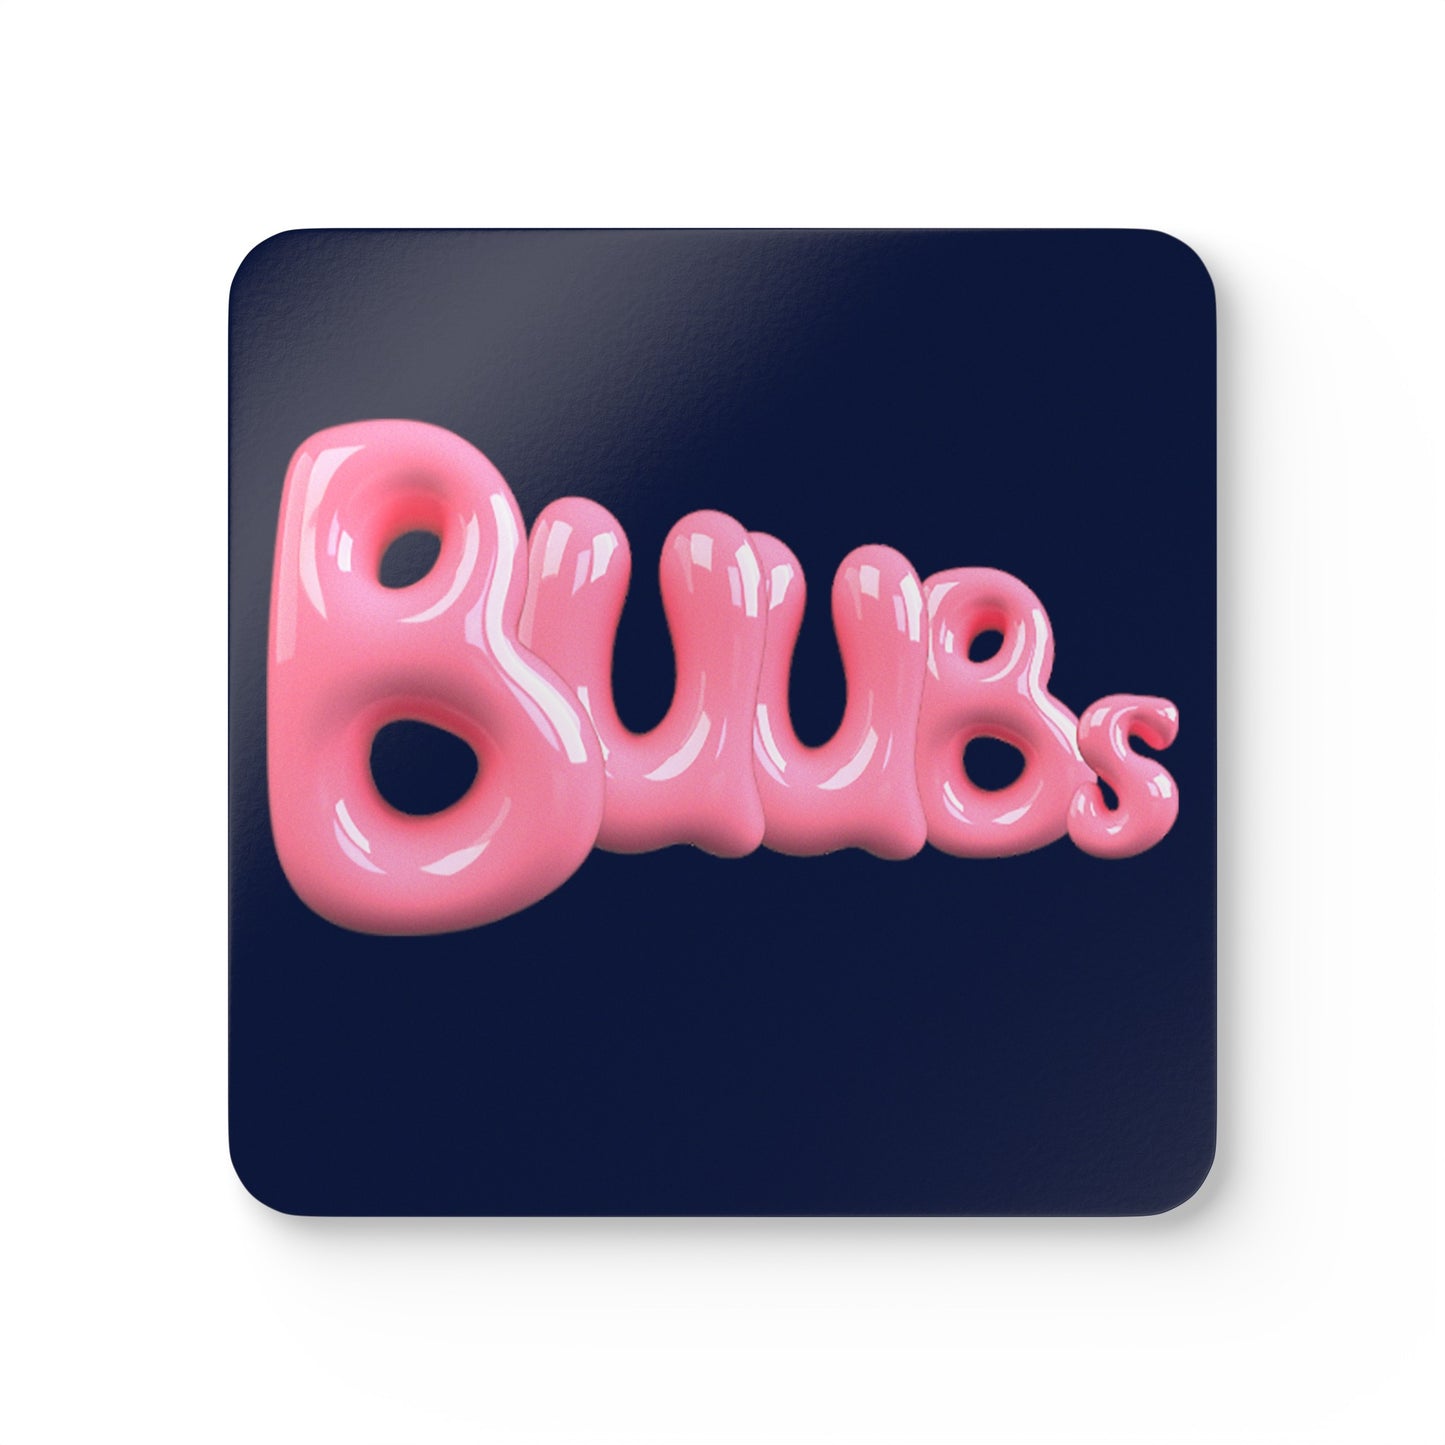 Juucie | "Buubs" Corkwood Coaster Set - Juucie